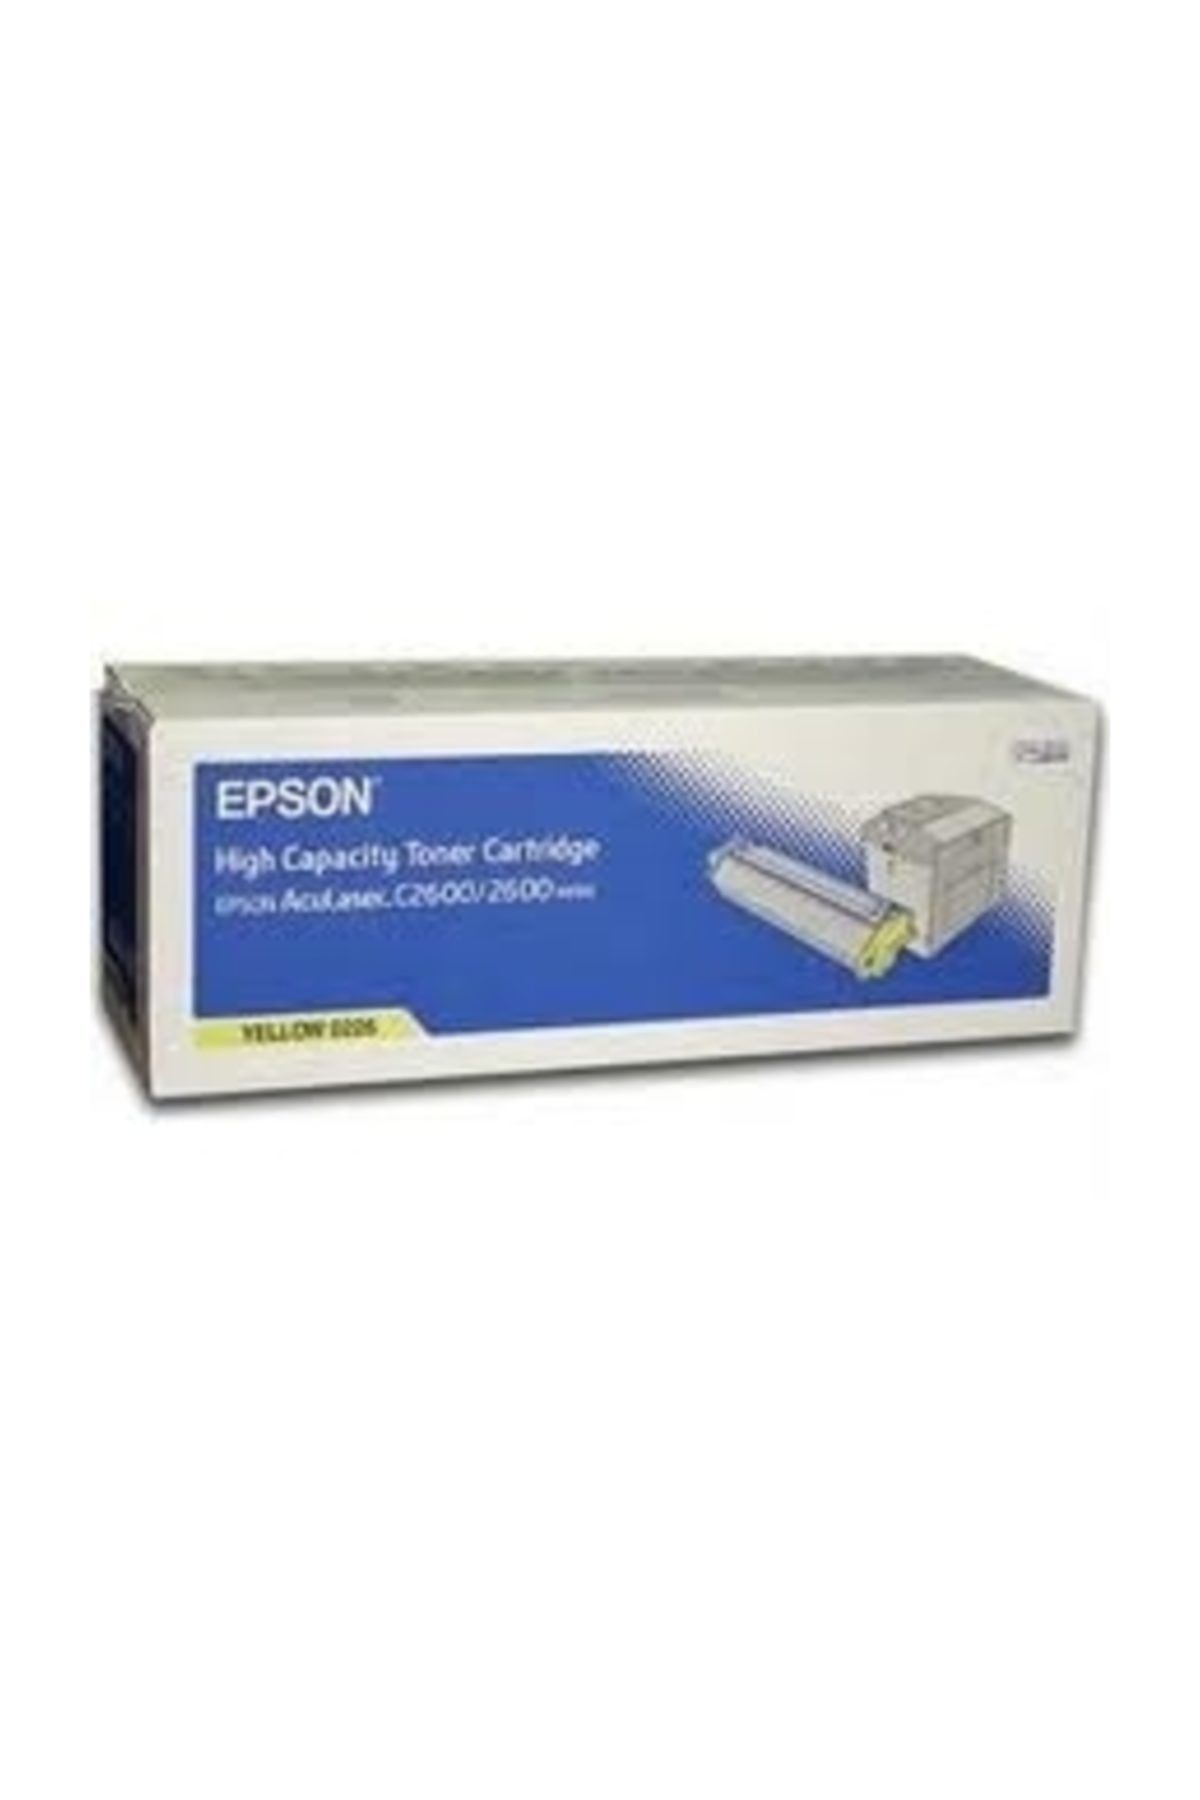 Epson 2600 / C2600n C13s050226 Sarı Orjinal Toner- Yüksek Kapasite